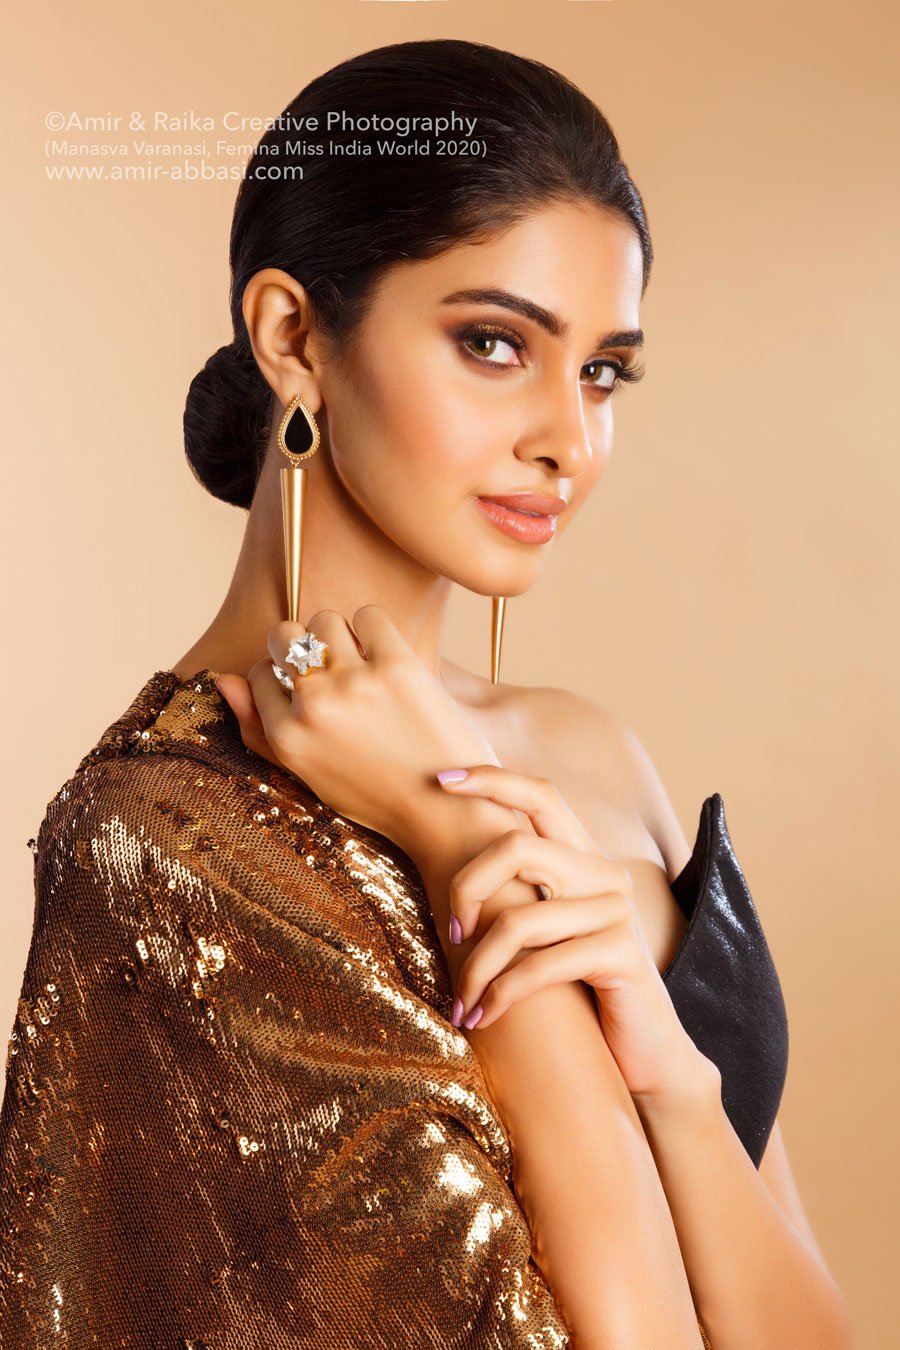 Official fashion photoshoot for Manasa Varanasi - Femina Miss India World 2020